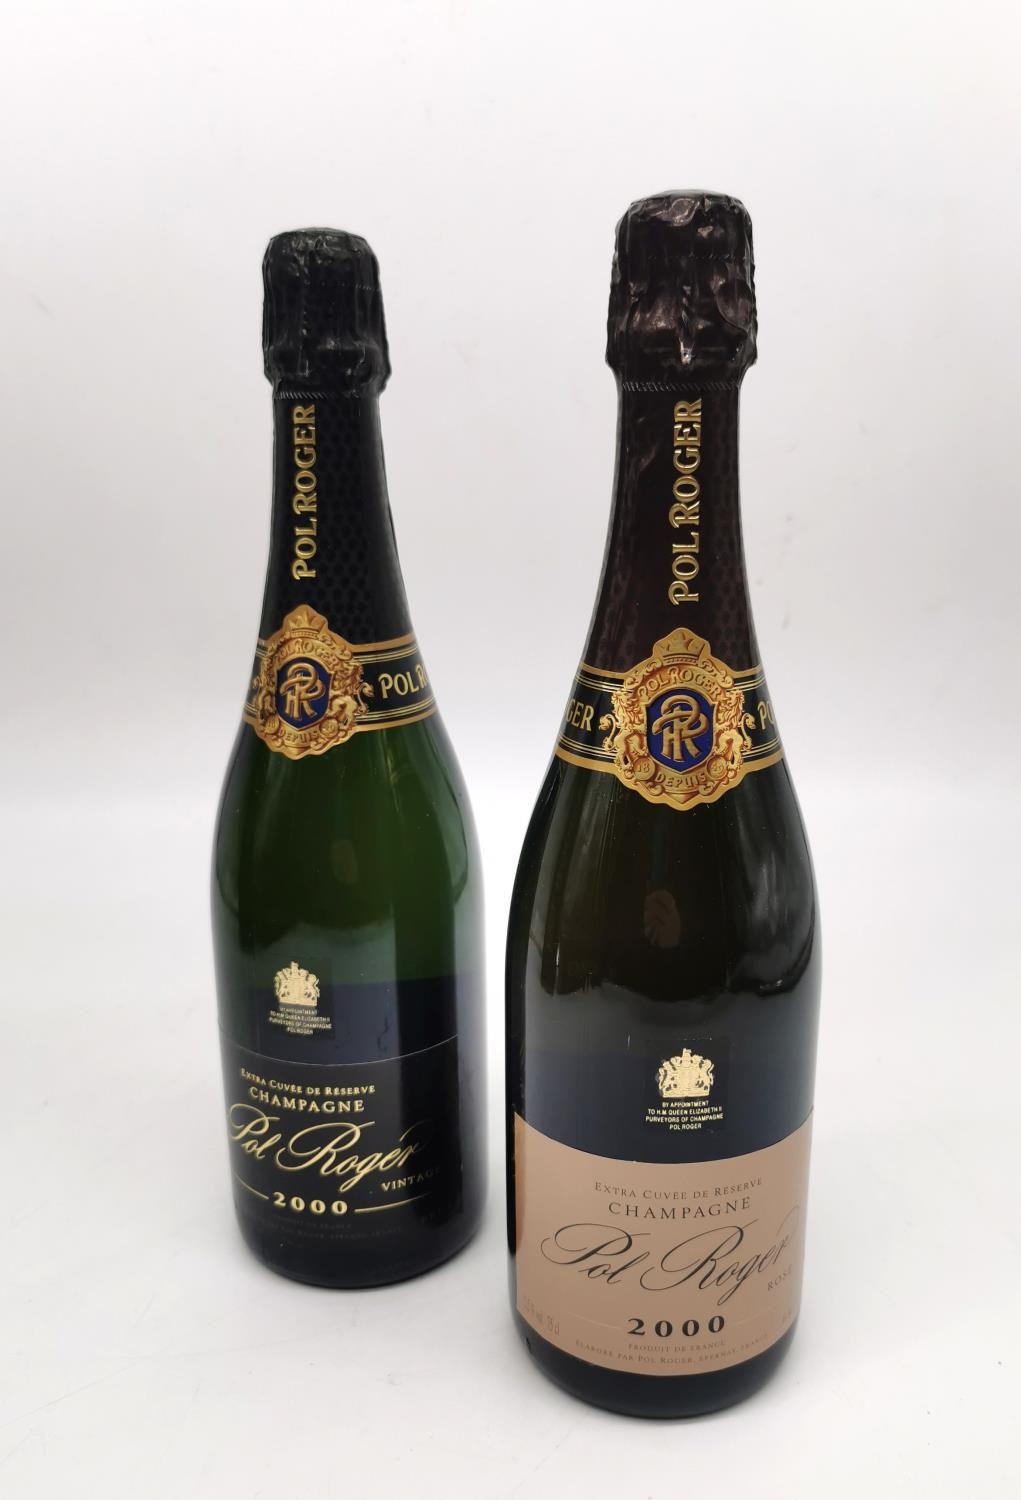 Two boxed Pol Roger Champagne bottles. One bottle Pol Roger vintage Brut Extra Cuvée de Reserve, - Image 7 of 7